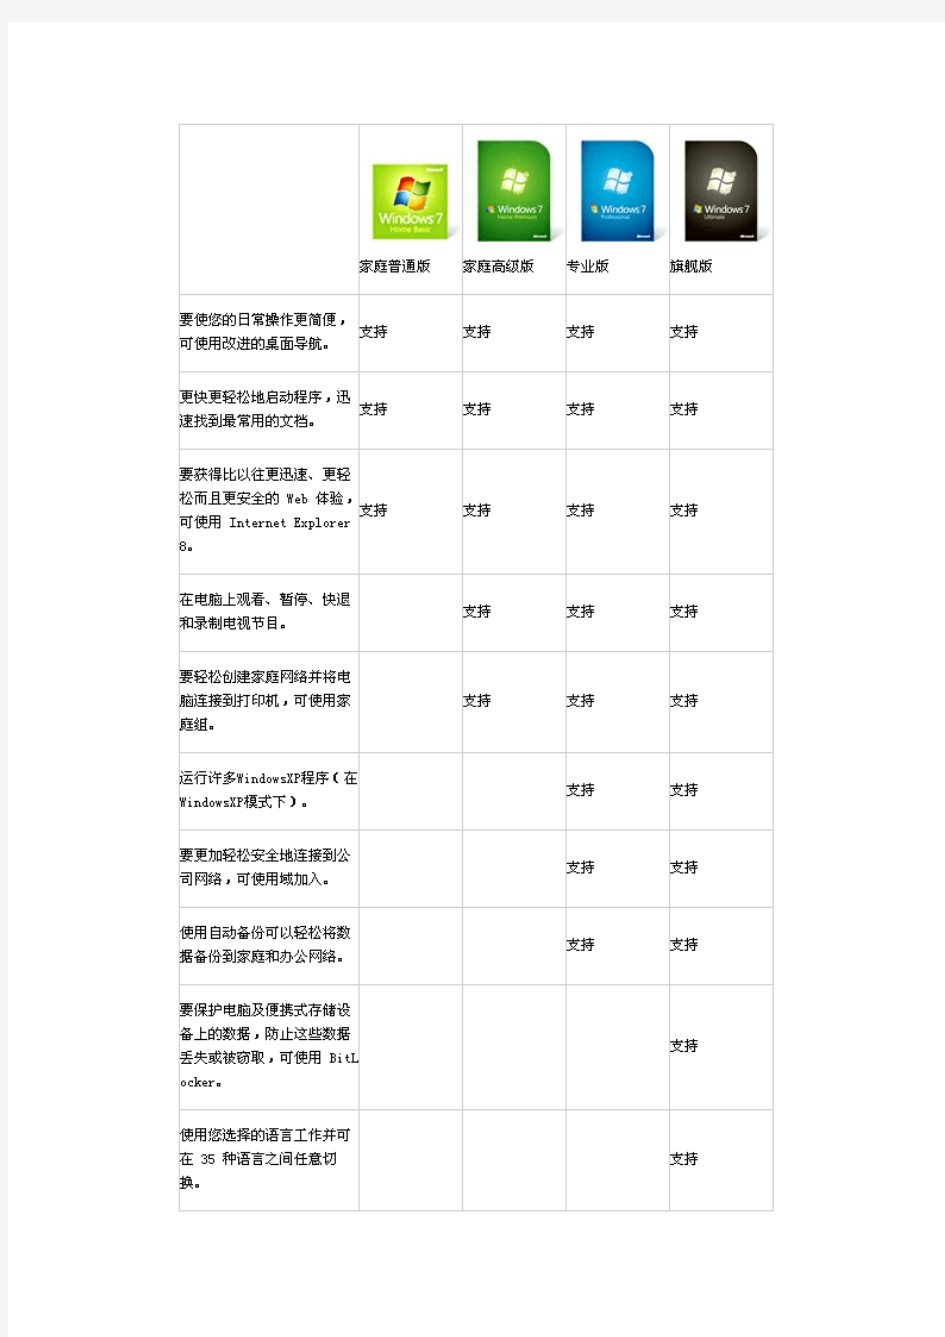 推荐下载Windows7简体中文旗舰版+专业版+企业版+家庭高级版(32位64位)MSDN原版镜像+有效激活方法